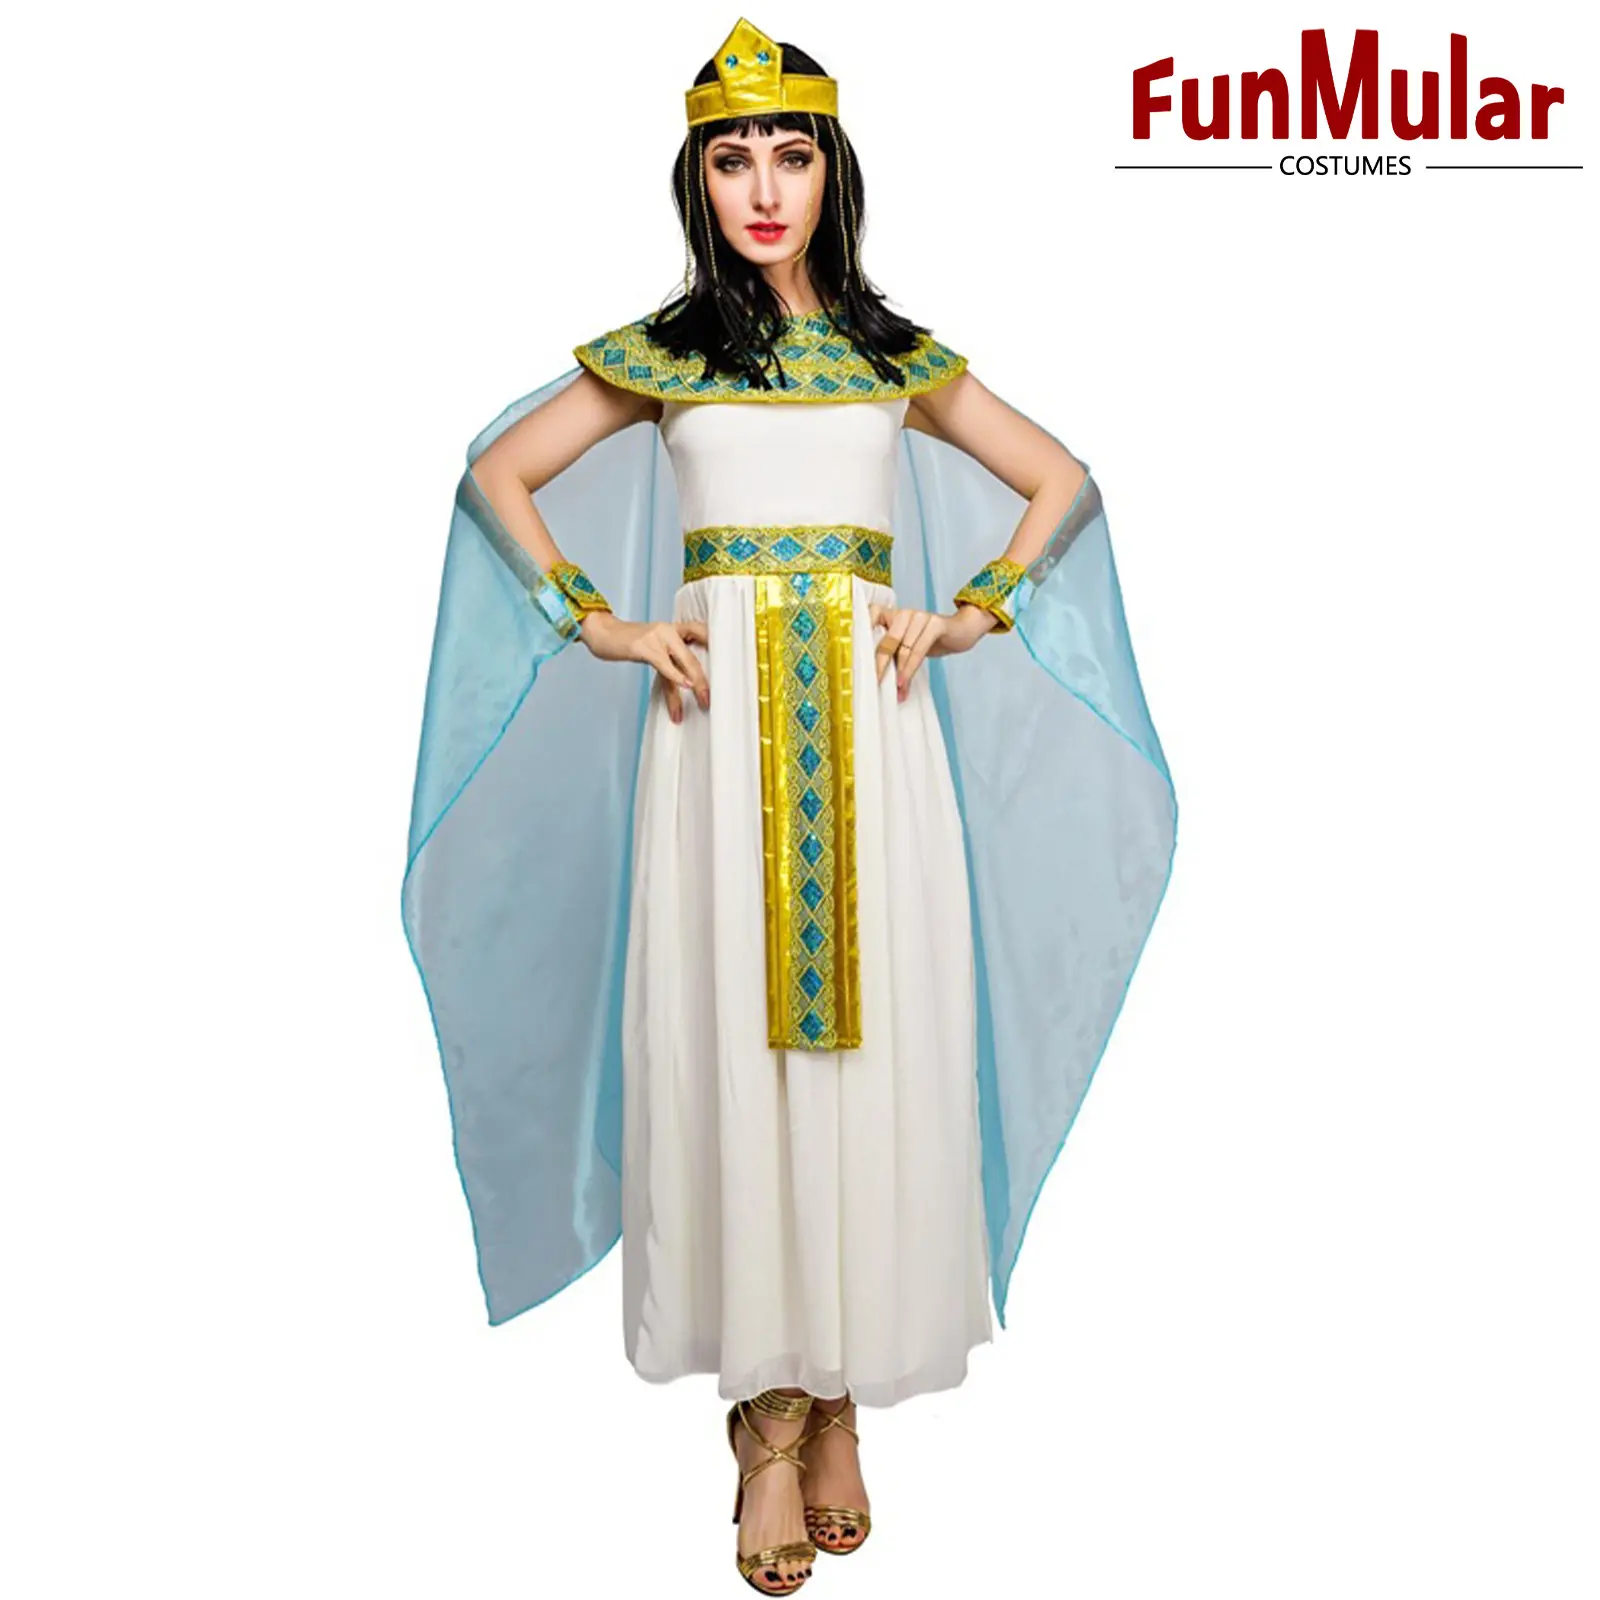 Disfraz egipcio Funmular para mujer, disfraz de Cleopatra para adultos, disfraz de Halloween